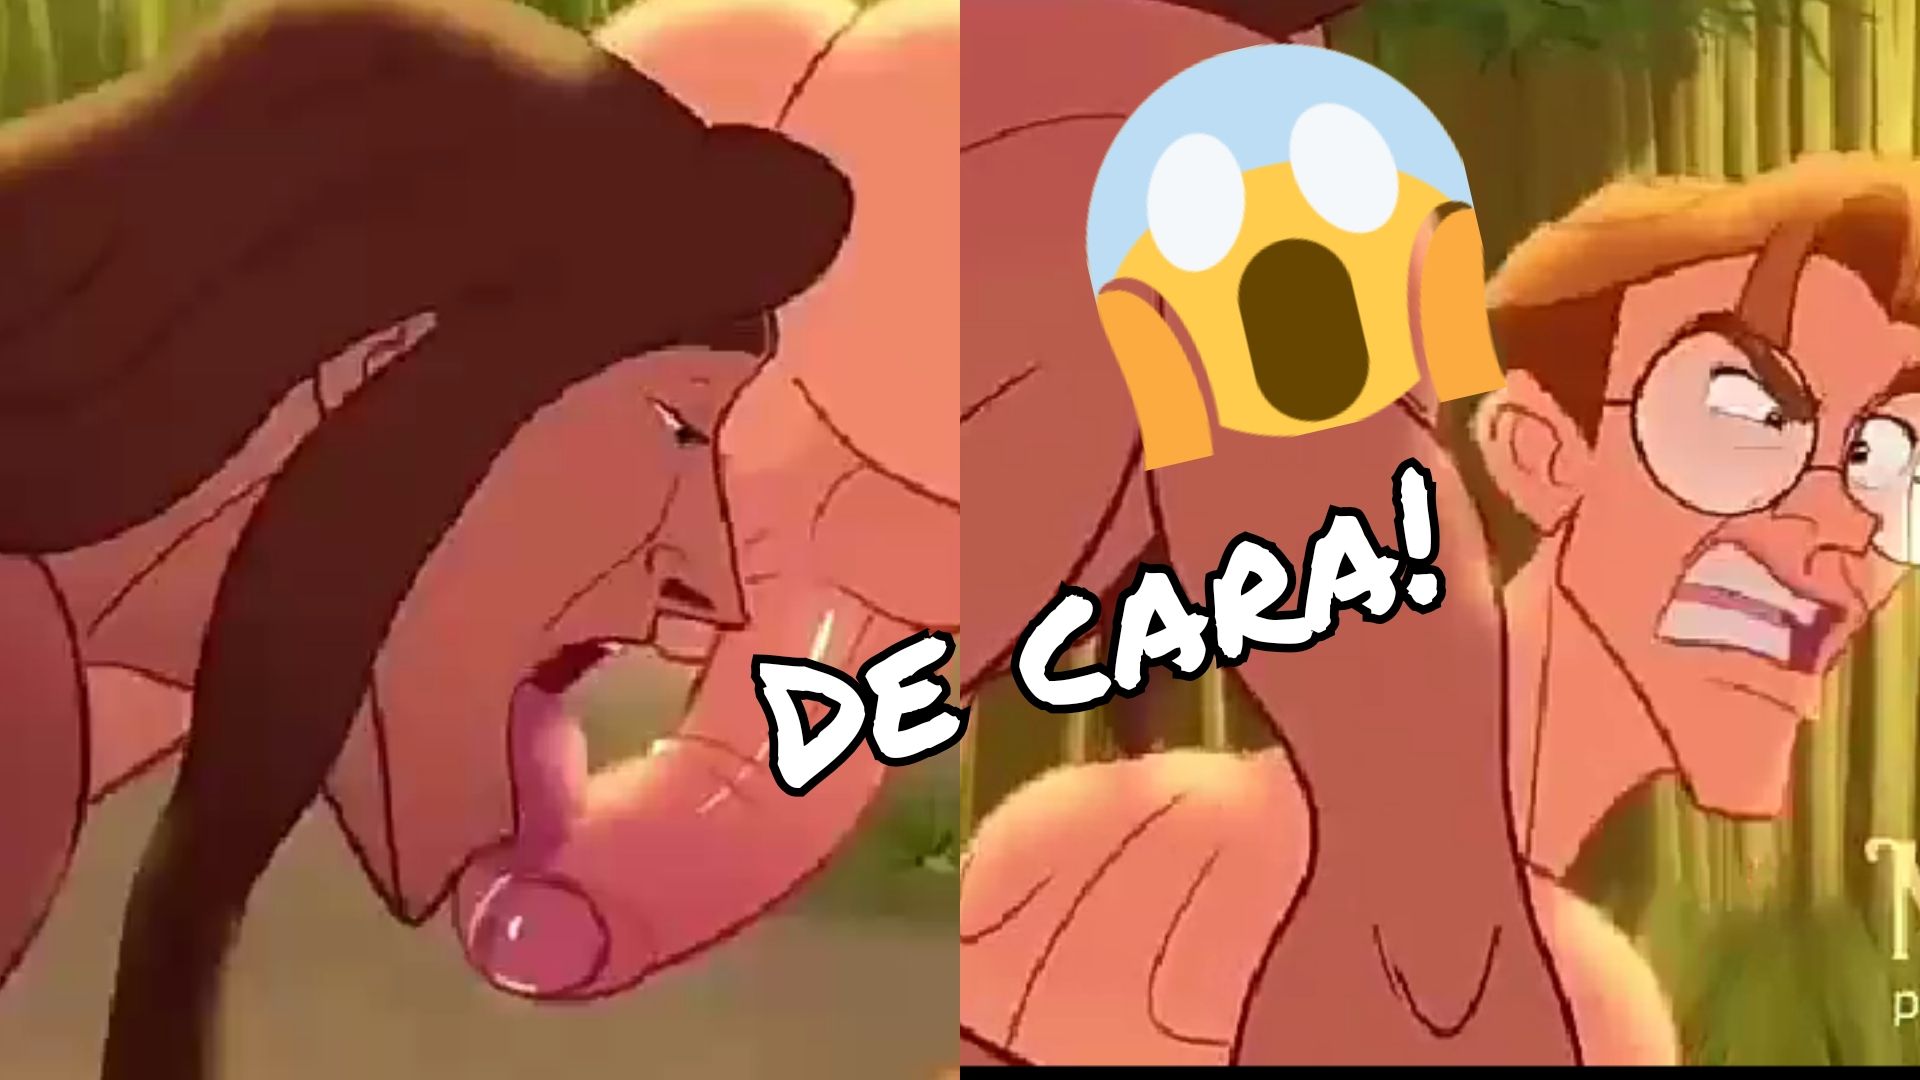 De cara com essa versão erótica do Tarzan da Disney! Narração superou expectativas!